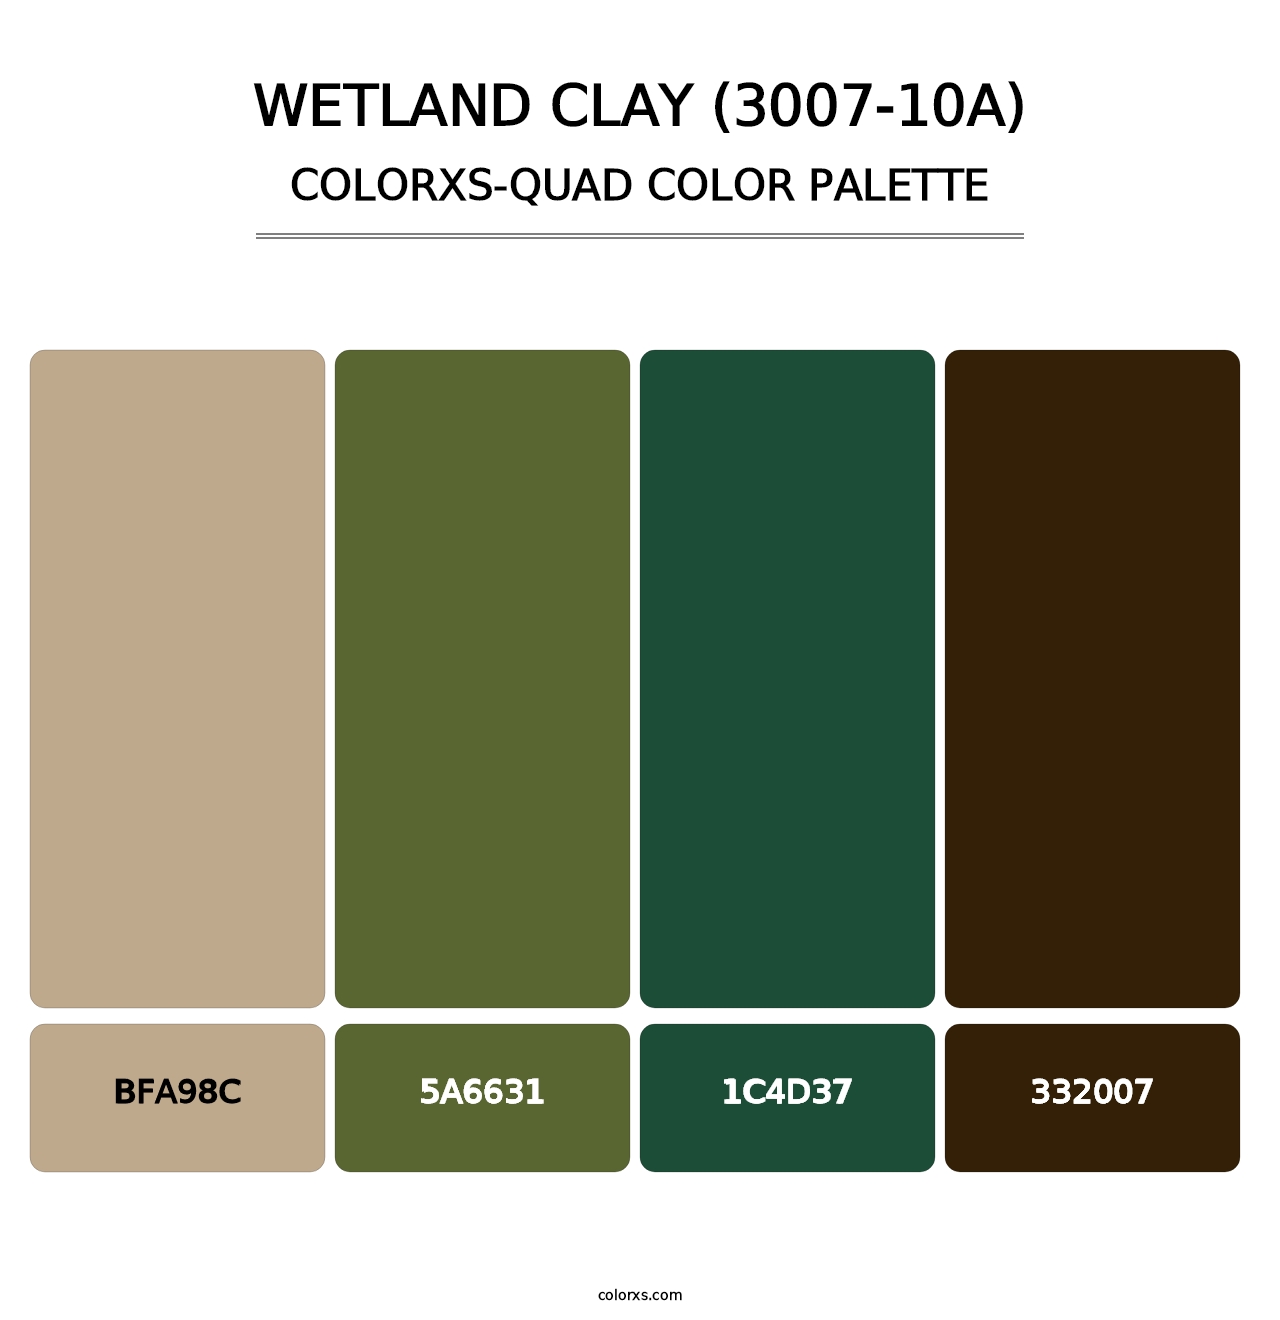 Wetland Clay (3007-10A) - Colorxs Quad Palette